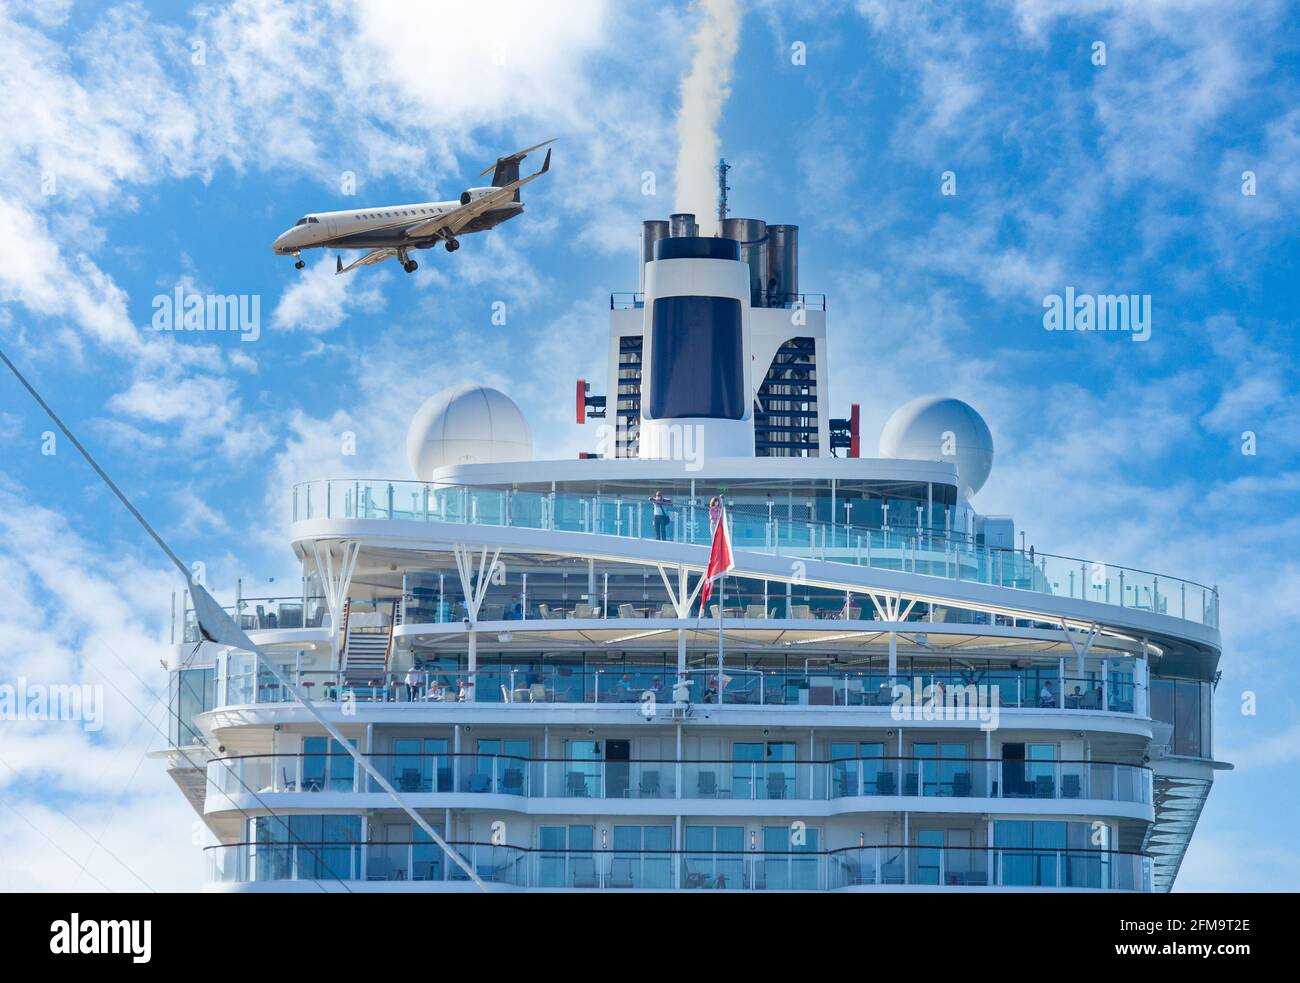 Privatjet, der über dem Kreuzschiff fliegt. Rauch, der aus dem Trichter aufstabt. Globale Erwärmung, Luftfahrt, Schifffahrt, Tourismus... Verschmutzungskonzept. Stockfoto